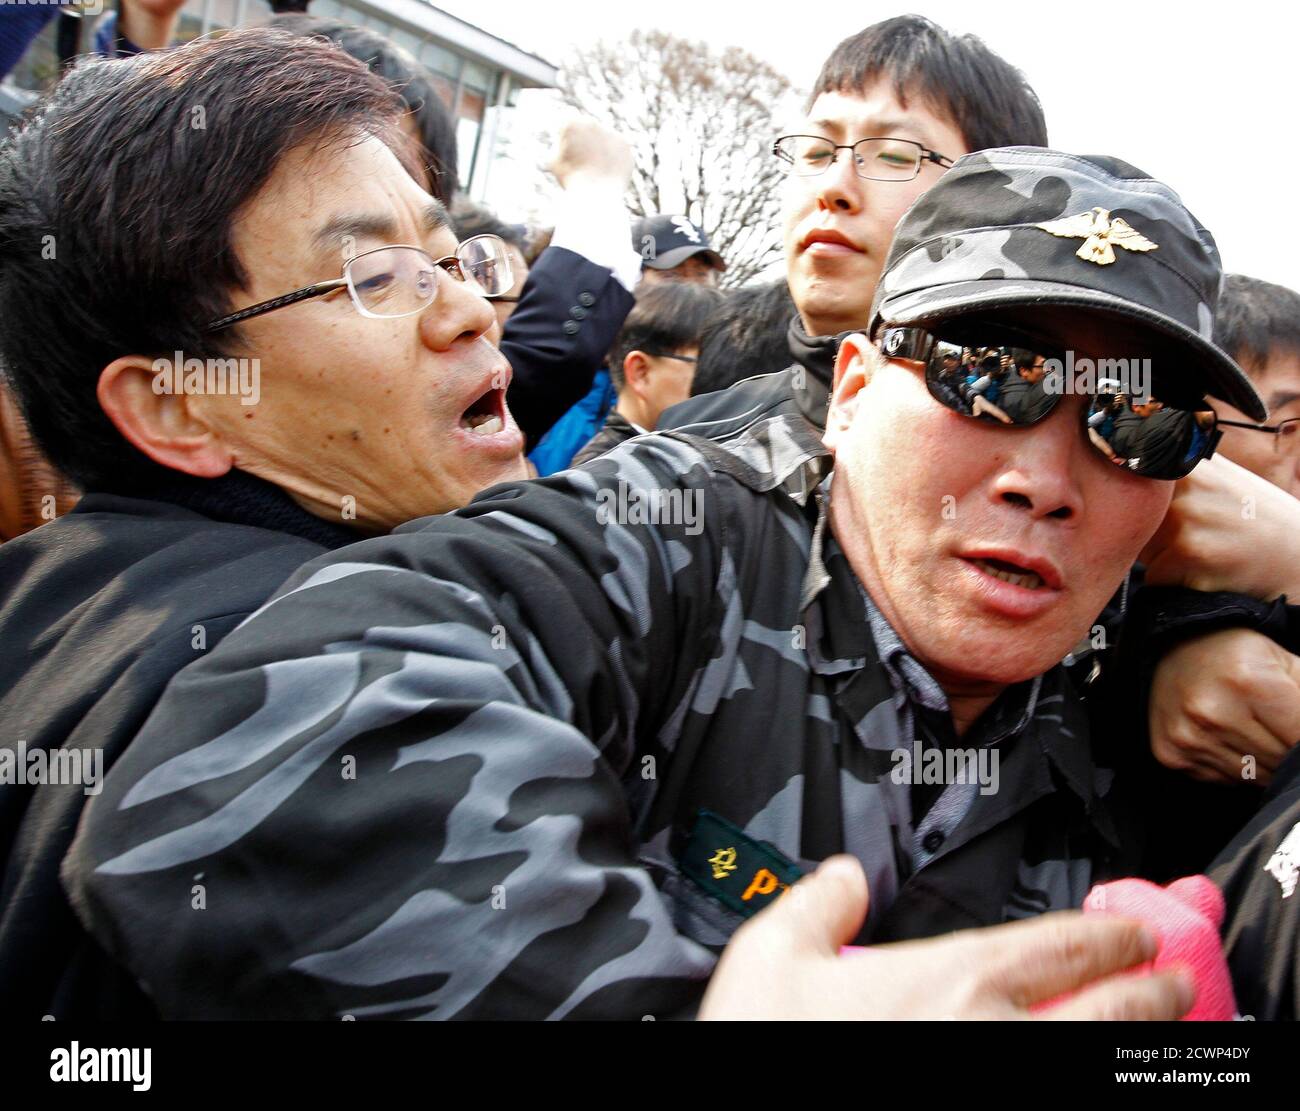 Un activista contra la guerra (L) lucha con un desertor norcoreano que era un ex soldado en el Ejército Popular de Corea del Norte mientras trata de impedir el evento de panfleto anti-Kim Jong-il del desertor en el pabellón de Imjingak, cerca de la zona desmilitarizada que separa las dos Coreas en Pajulu, a unos 55 km (34 millas) norte de Seúl, 29 de abril de 2011. Los ex desertores norcoreanos y activistas de derechos humanos lanzaron el viernes unos 200,000 folletos anti-Pyongyang, DVD anti-Corea del Norte, radios y 1,000 billetes de un dólar. El líder norcoreano Kim Jong-il está dispuesto a mantener conversaciones directas con Corea del Sur, pero con la isola Foto de stock